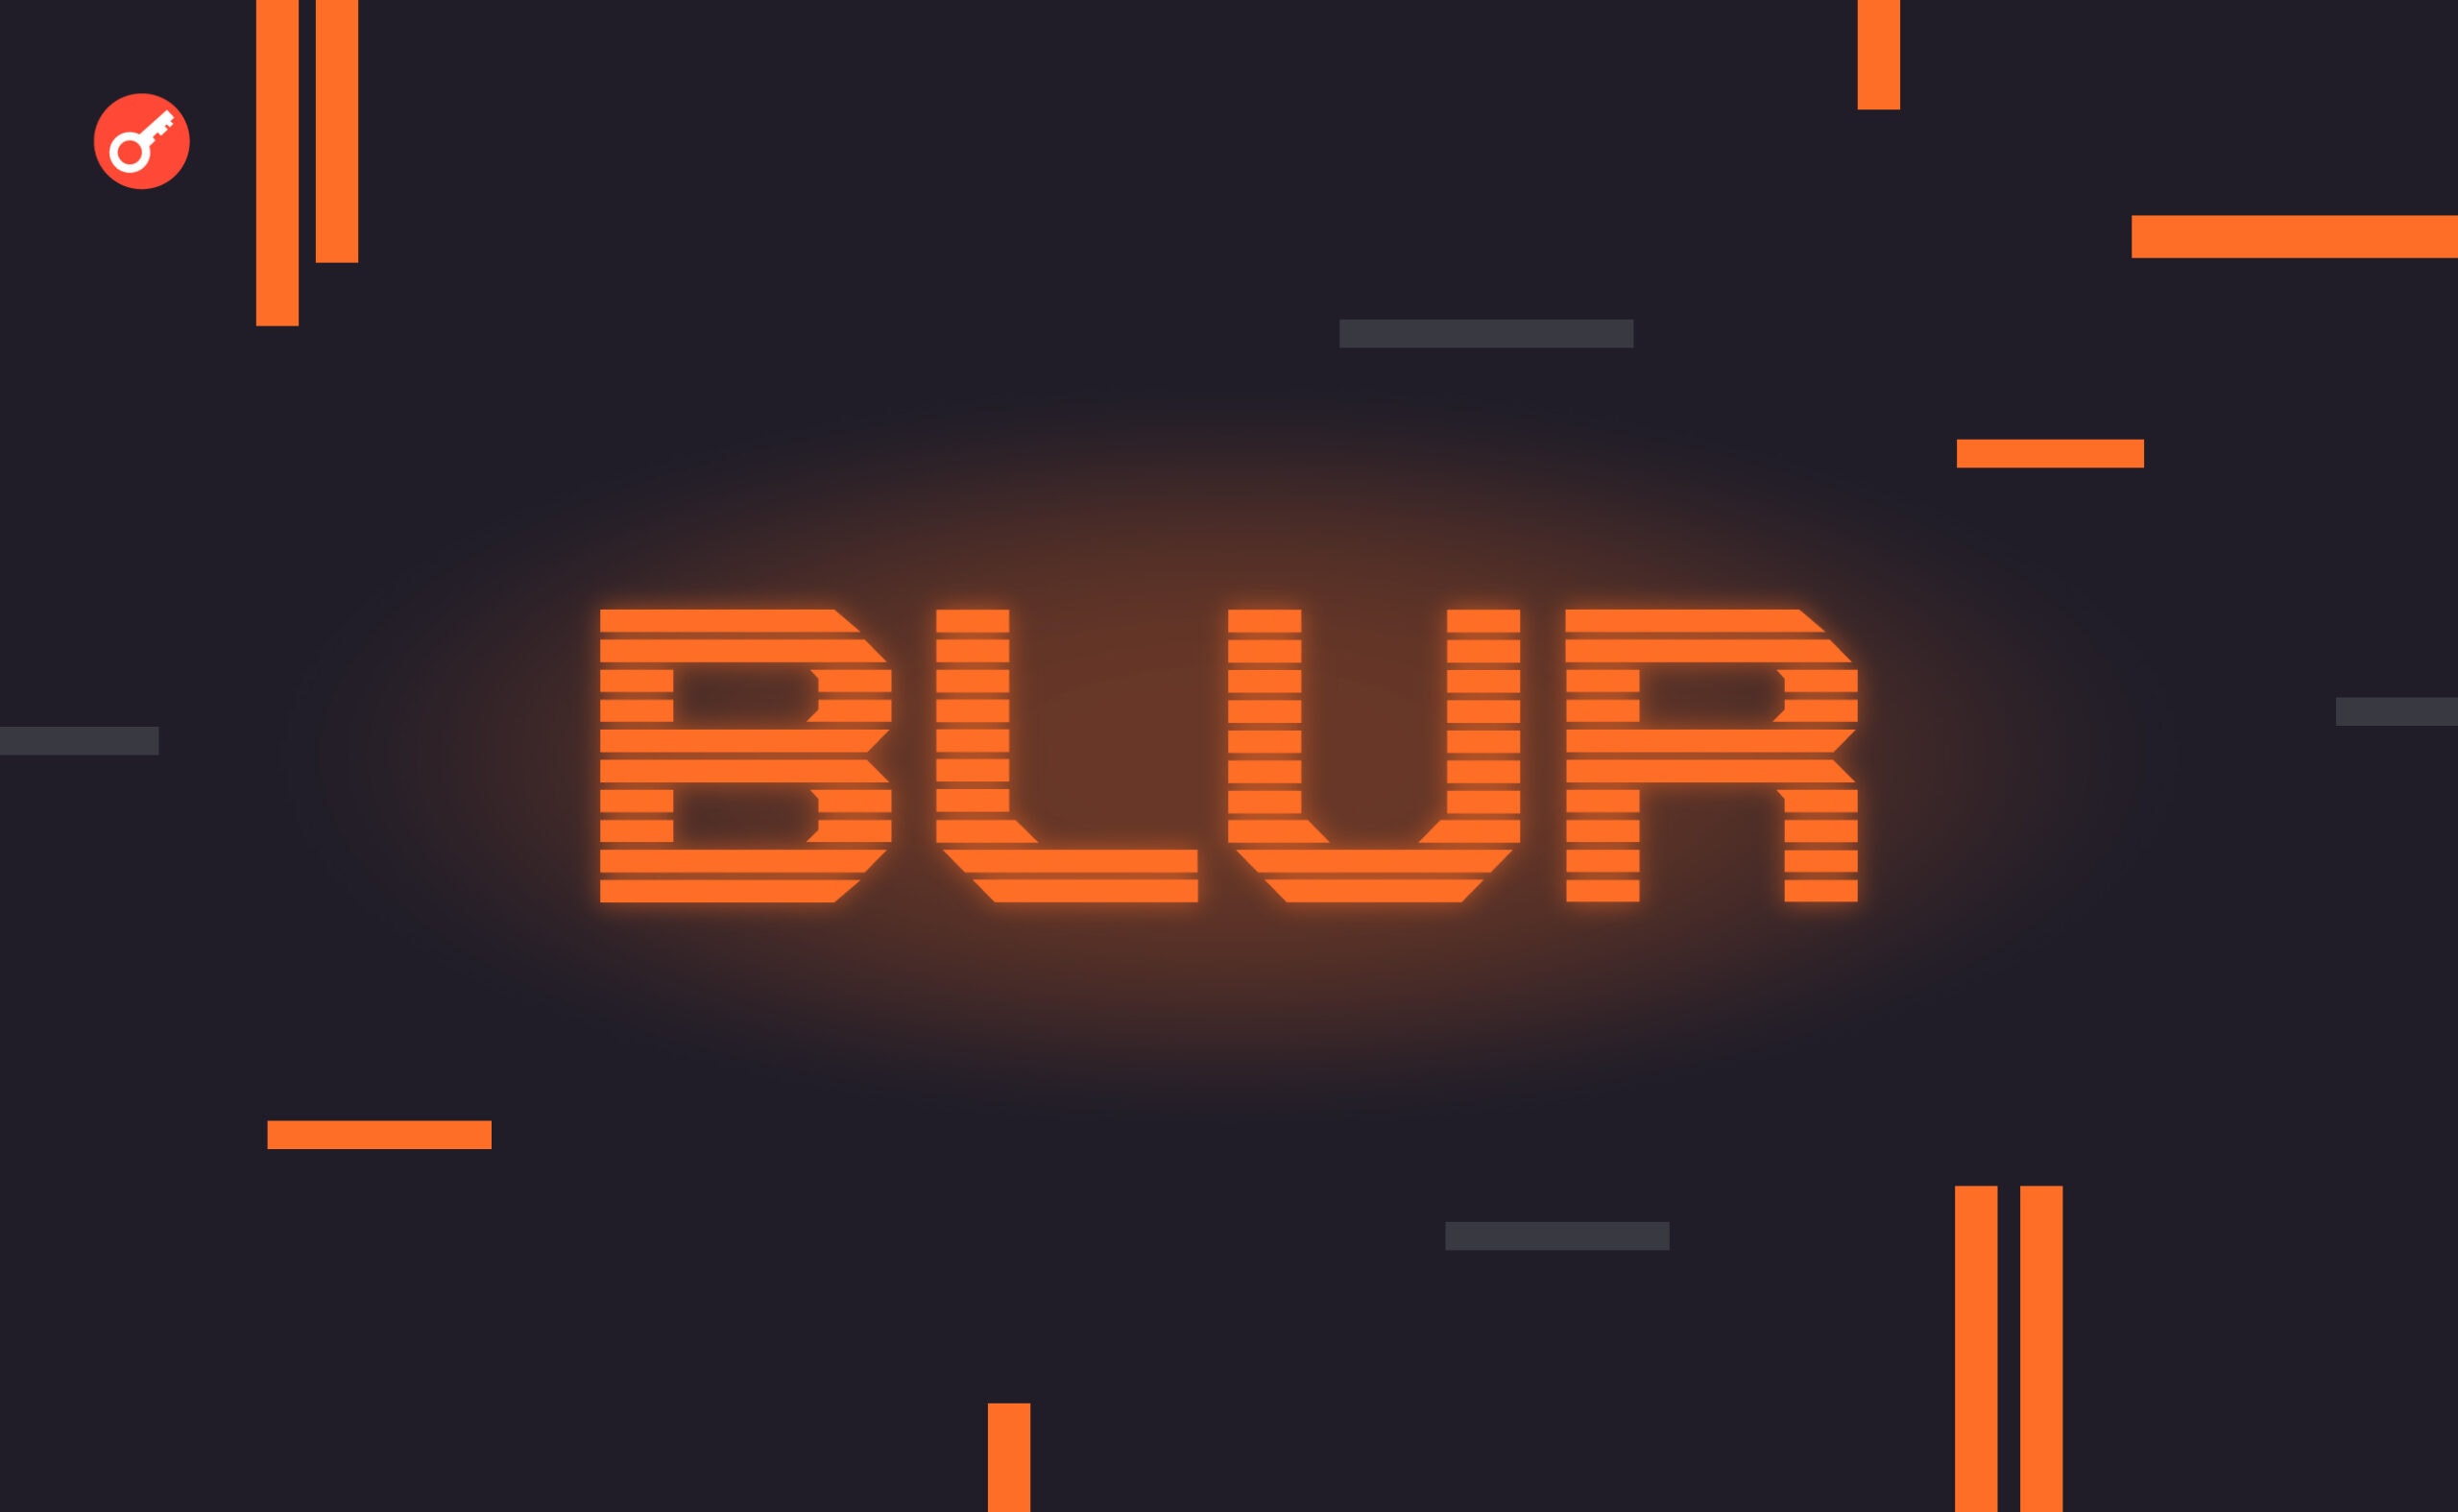 Blur запустила кредитну P2P-платформу Blend NFT. Головний колаж новини.